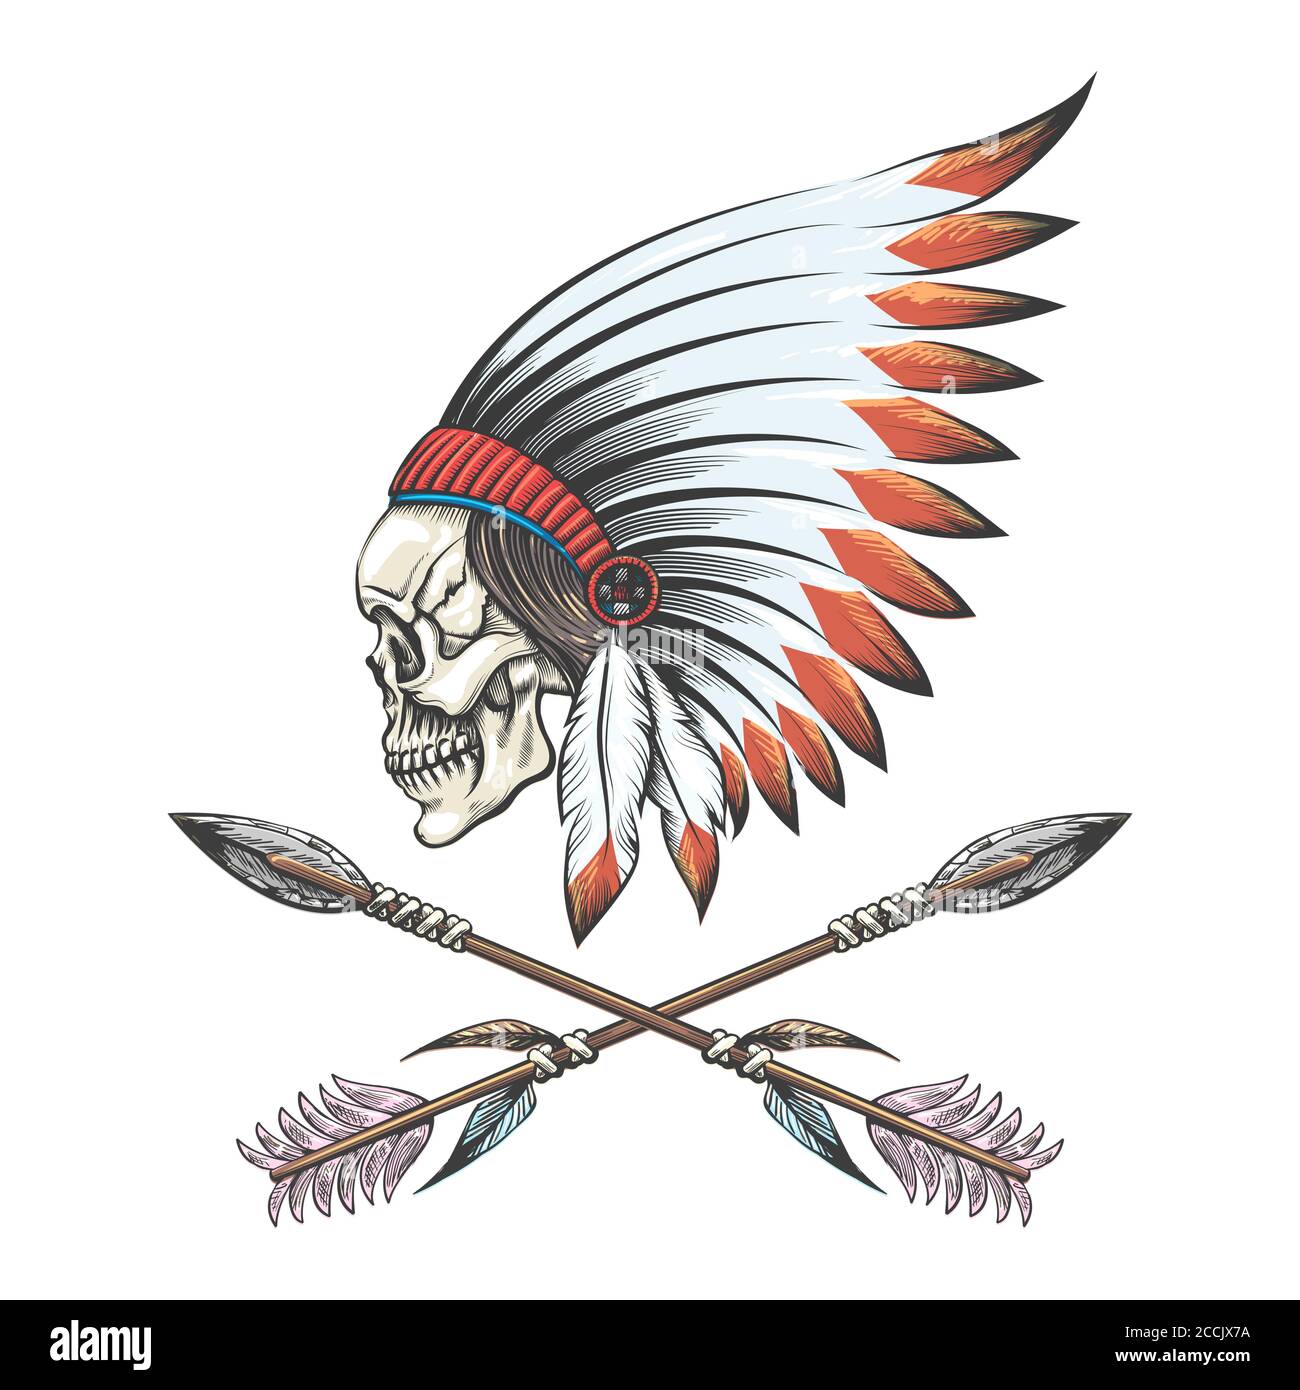 Crâne humain portant un capot de guerre américain natif et deux flèches croisées Tattoo. Illustration vectorielle. Illustration de Vecteur